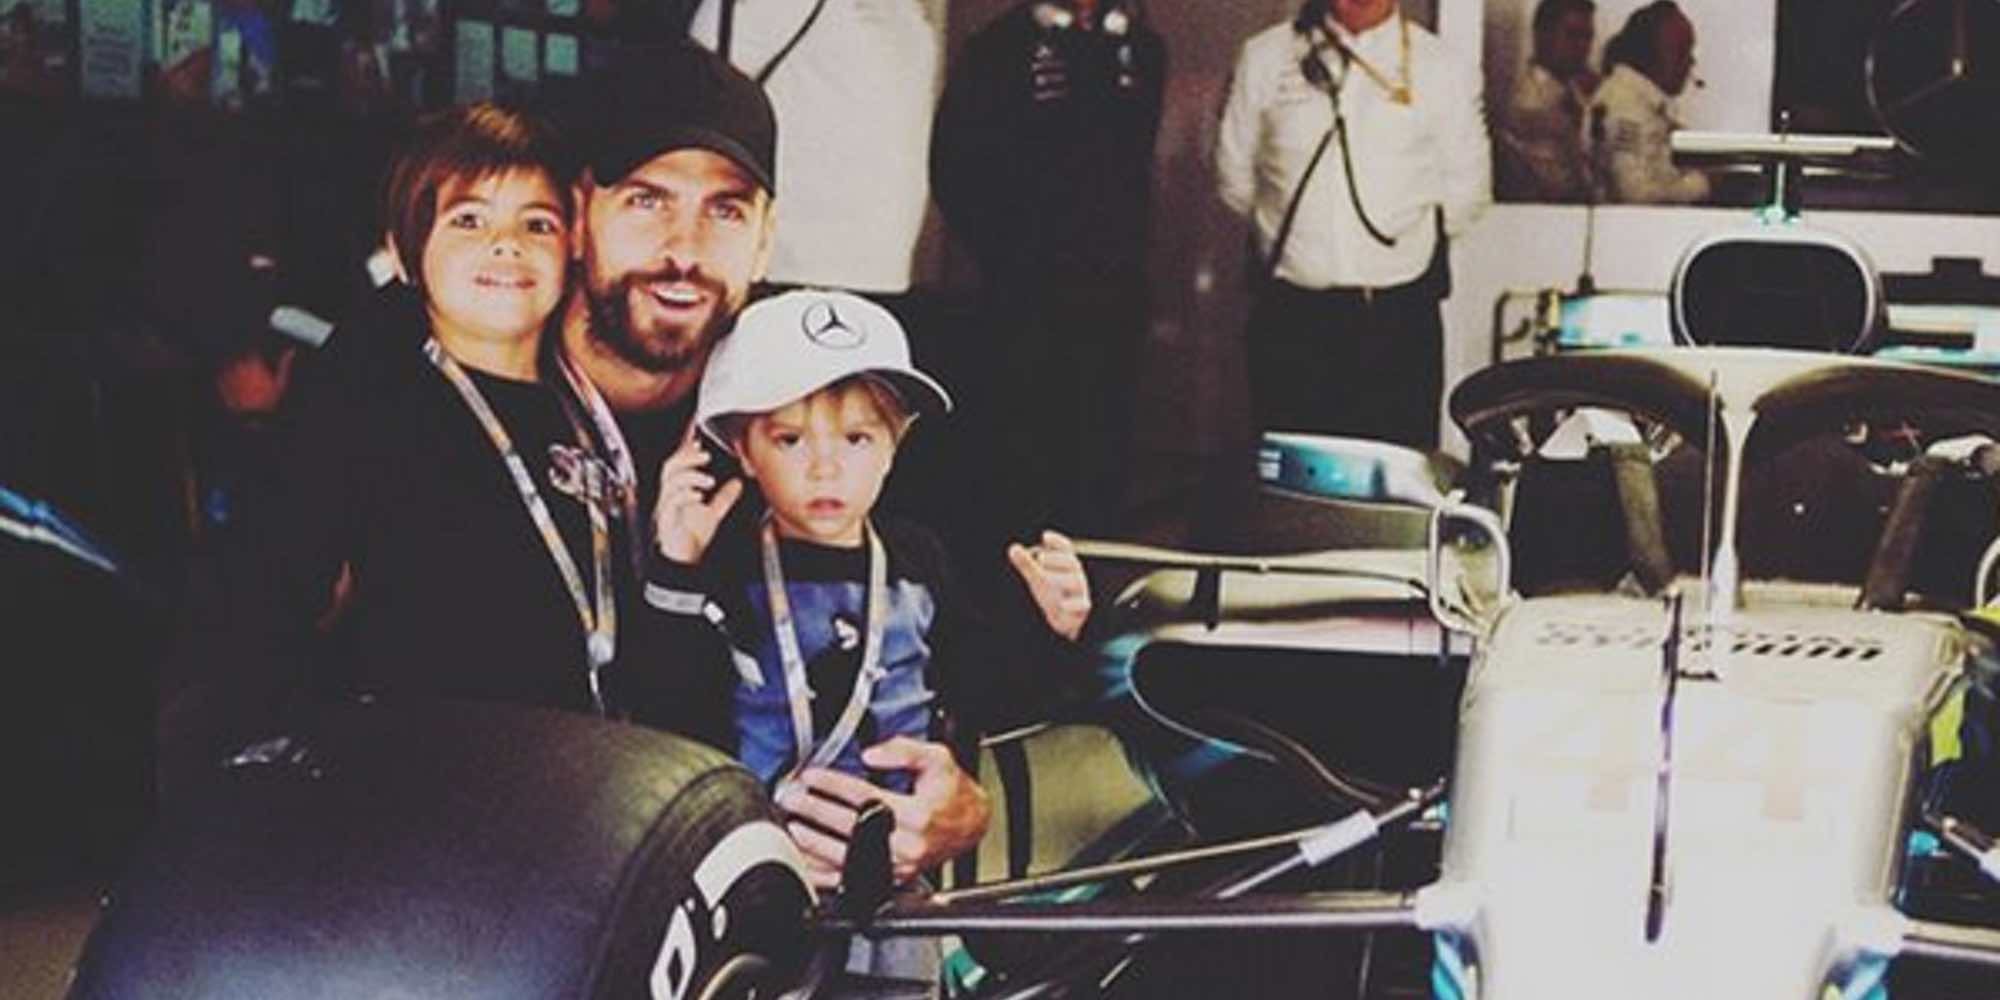 Milan se convierte en piloto de Fórmula Uno bajo la atenta mirada de su padre Gerard Piqué y su hermano Sasha